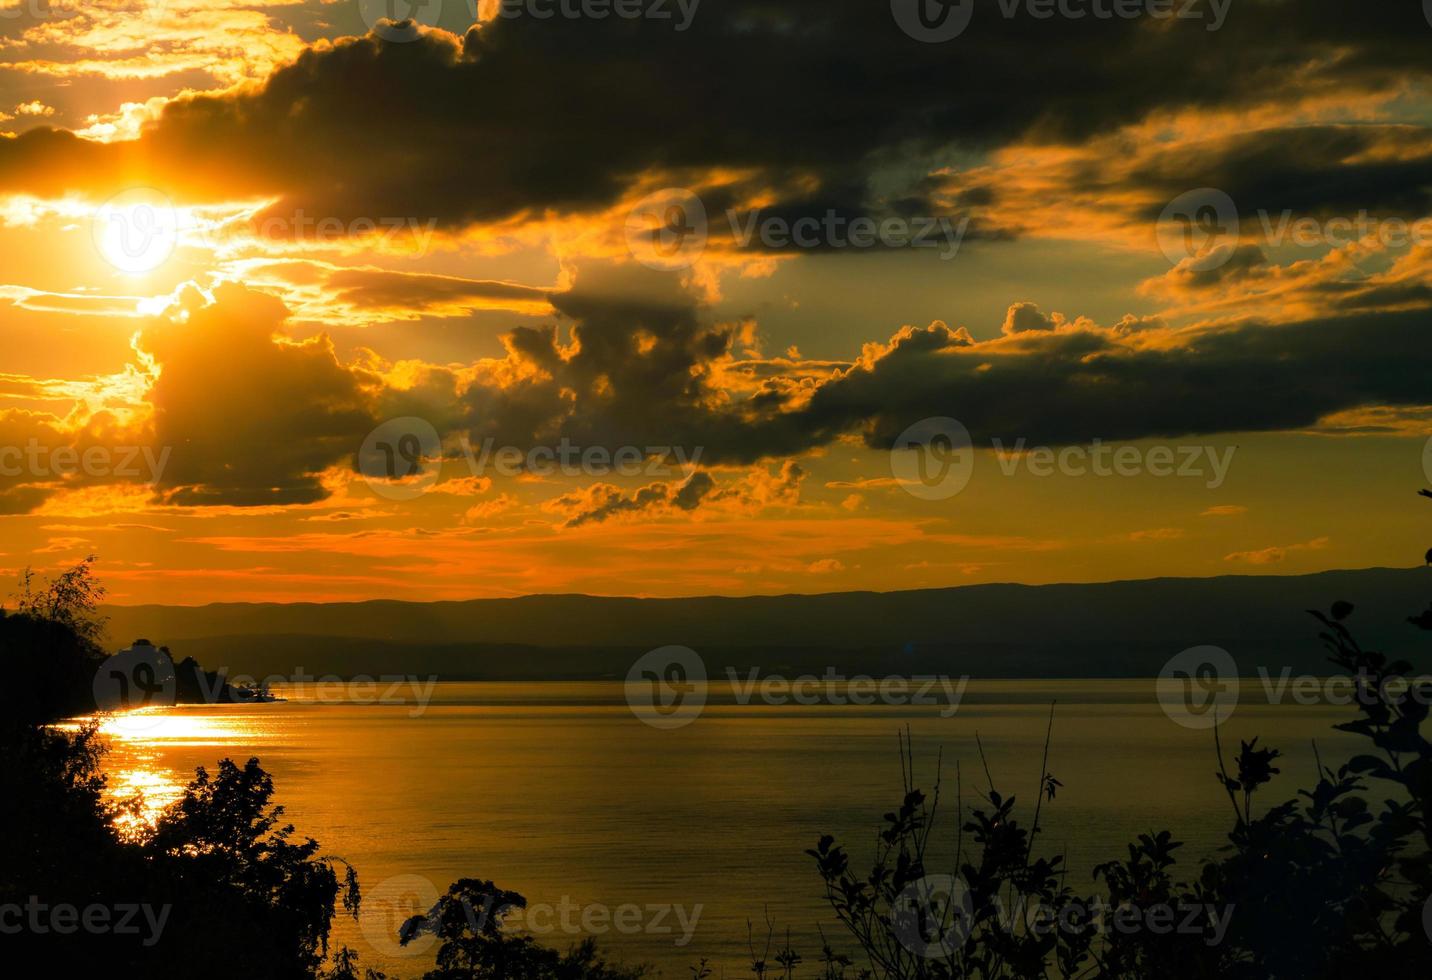 lindas cores do pôr do sol sobre o lago genebra, o reflexo do sol poente na água, a atmosfera de paz e tranquilidade foto